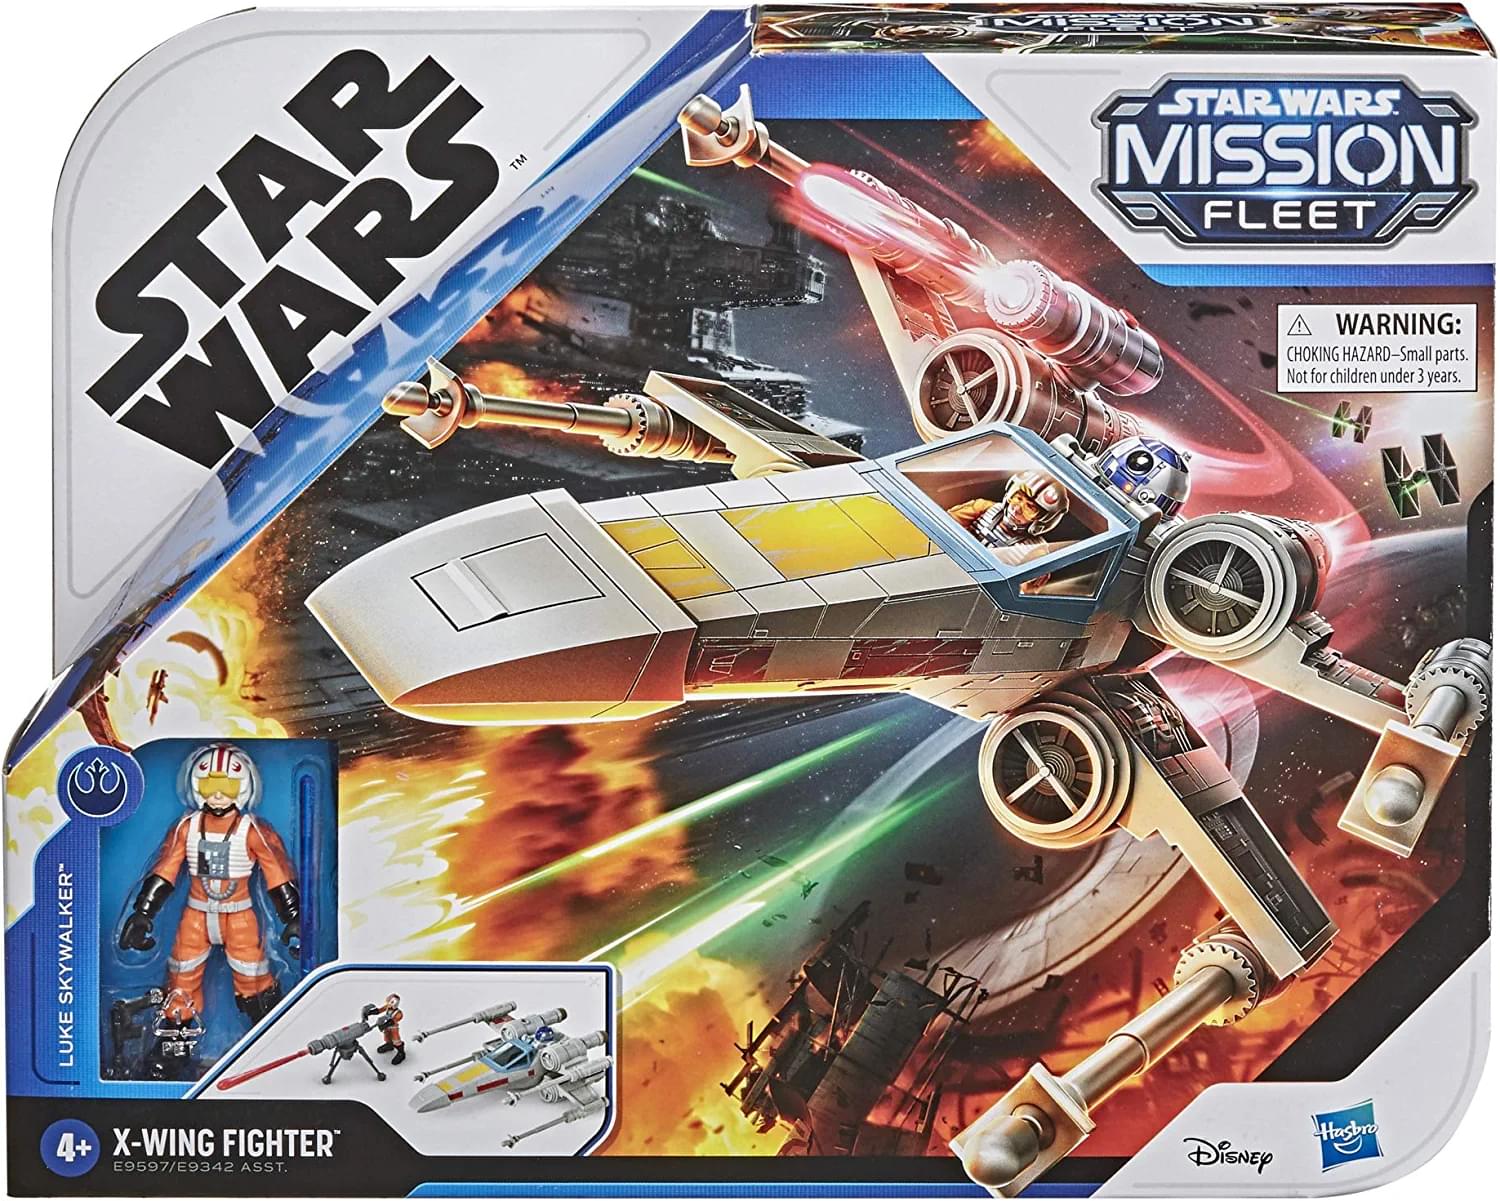 Star Wars Mission Fleet Stellar Class Luke Skywalker X-Wing Fighter